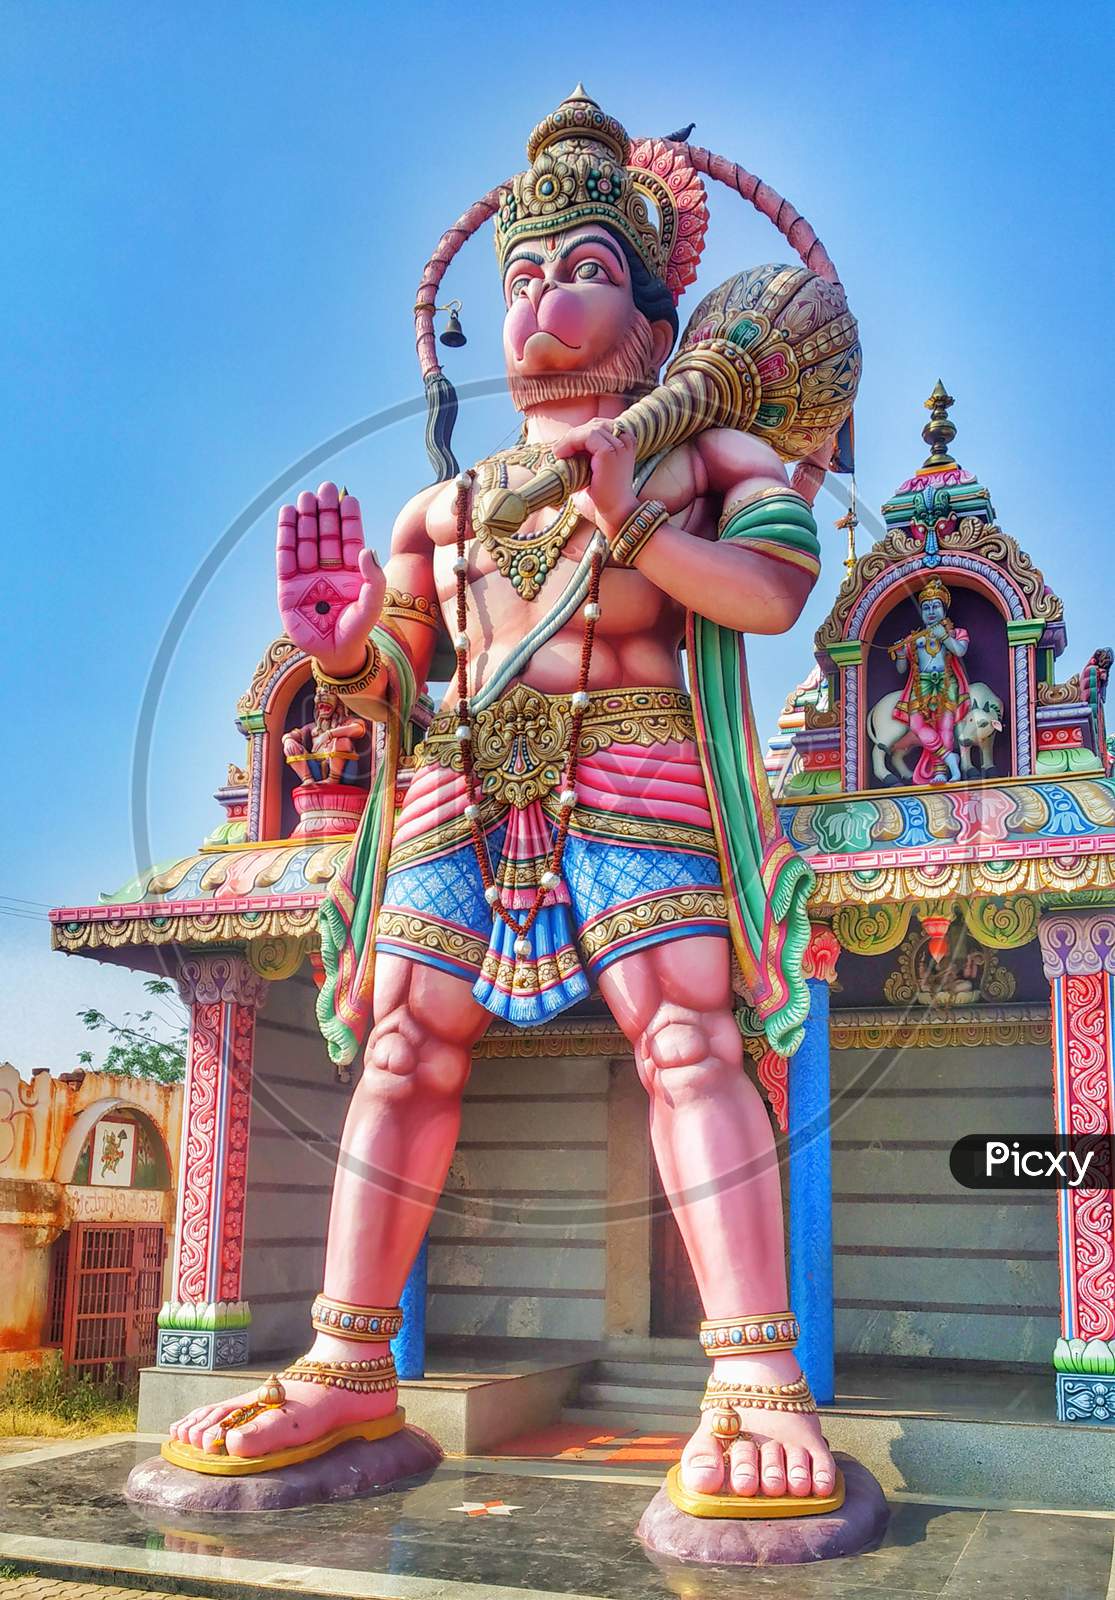 Hanuman temple near hebbur, tumkur, Karnataka